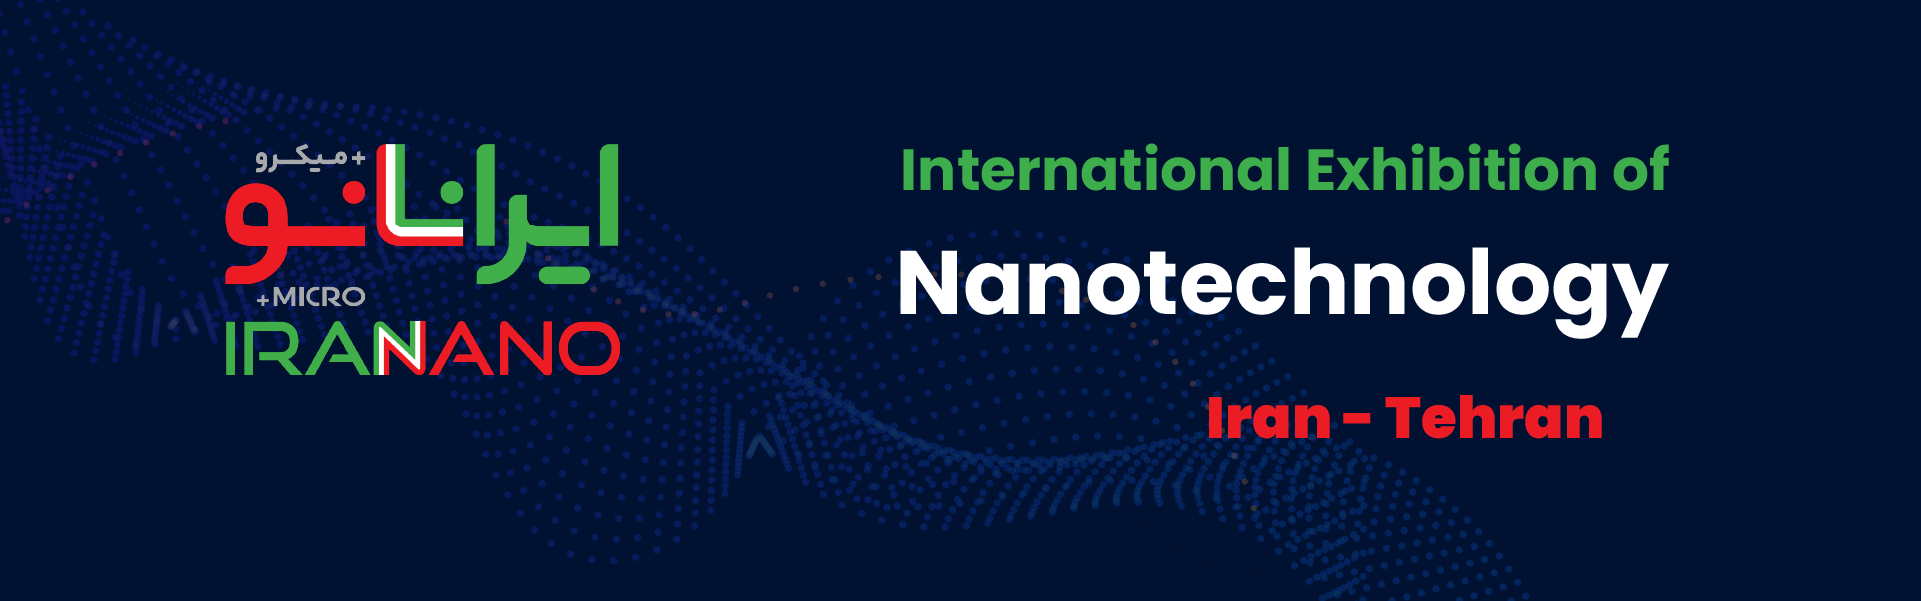 nanotechnology exhibition of iran